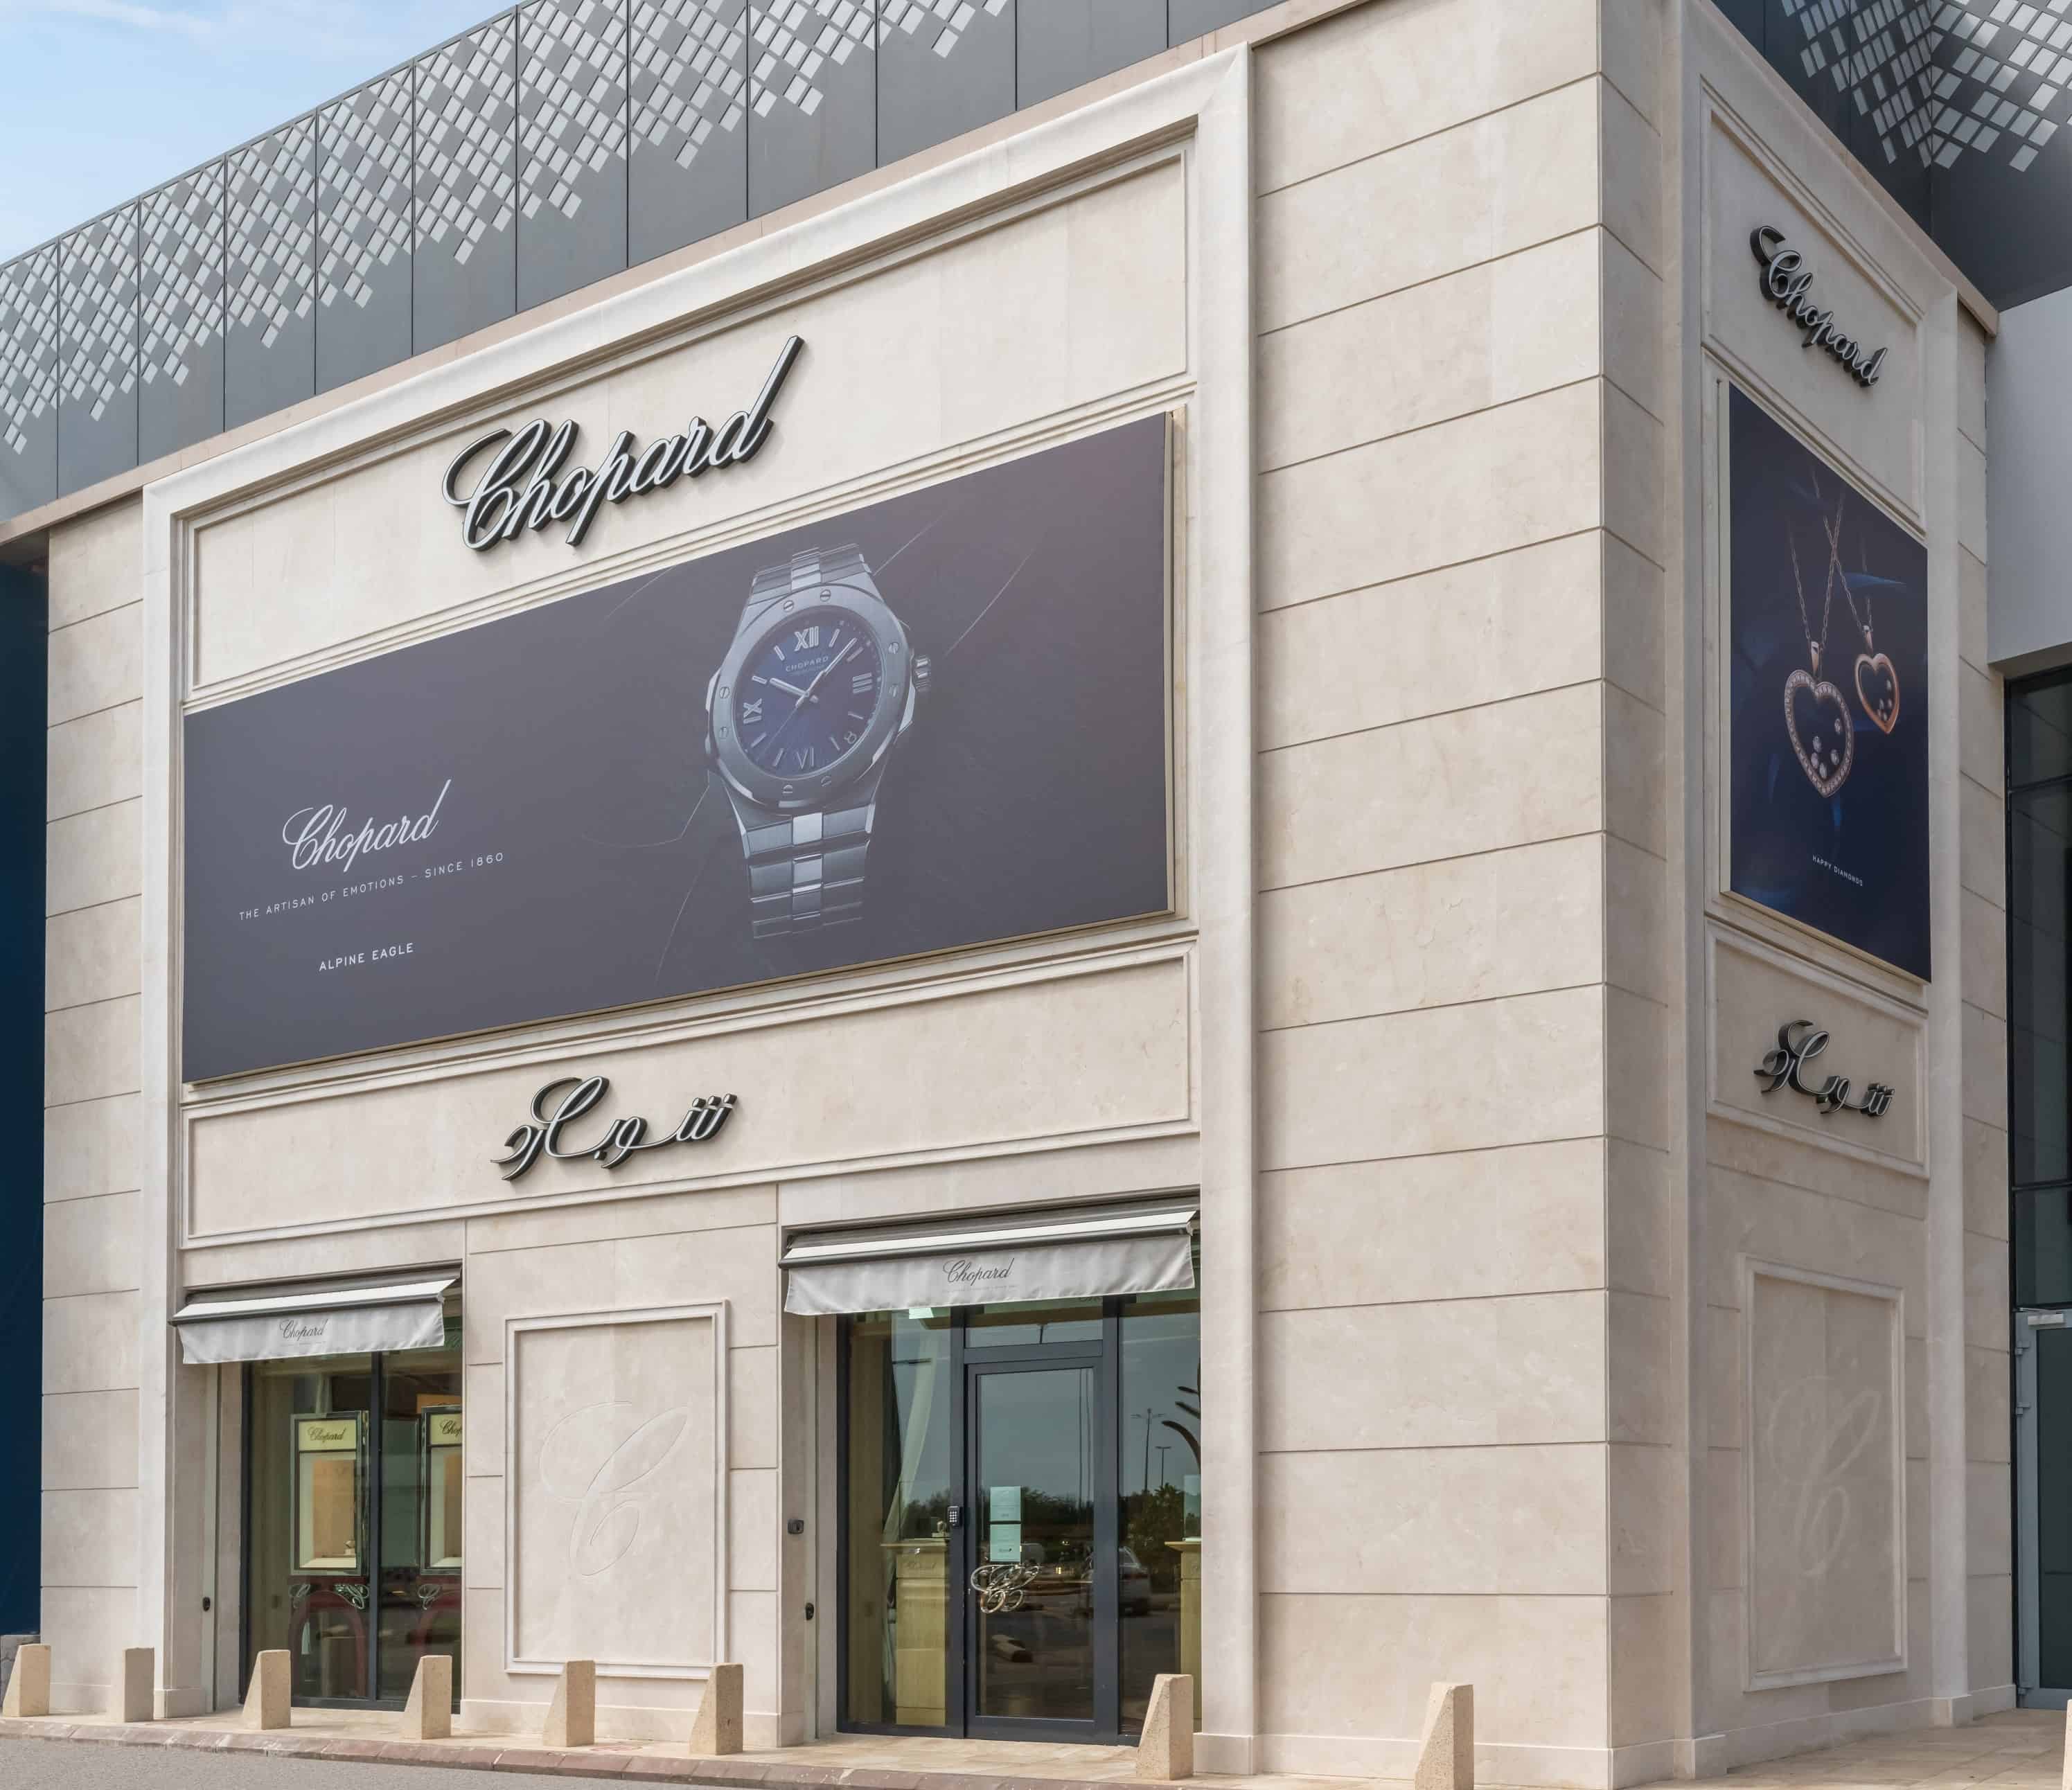 بالتعاون مع شركة عطار المتحدة دار شوبارد تفتتح صالة عرض جديدة في مركز البساتين بالمملكة العربية السعودية